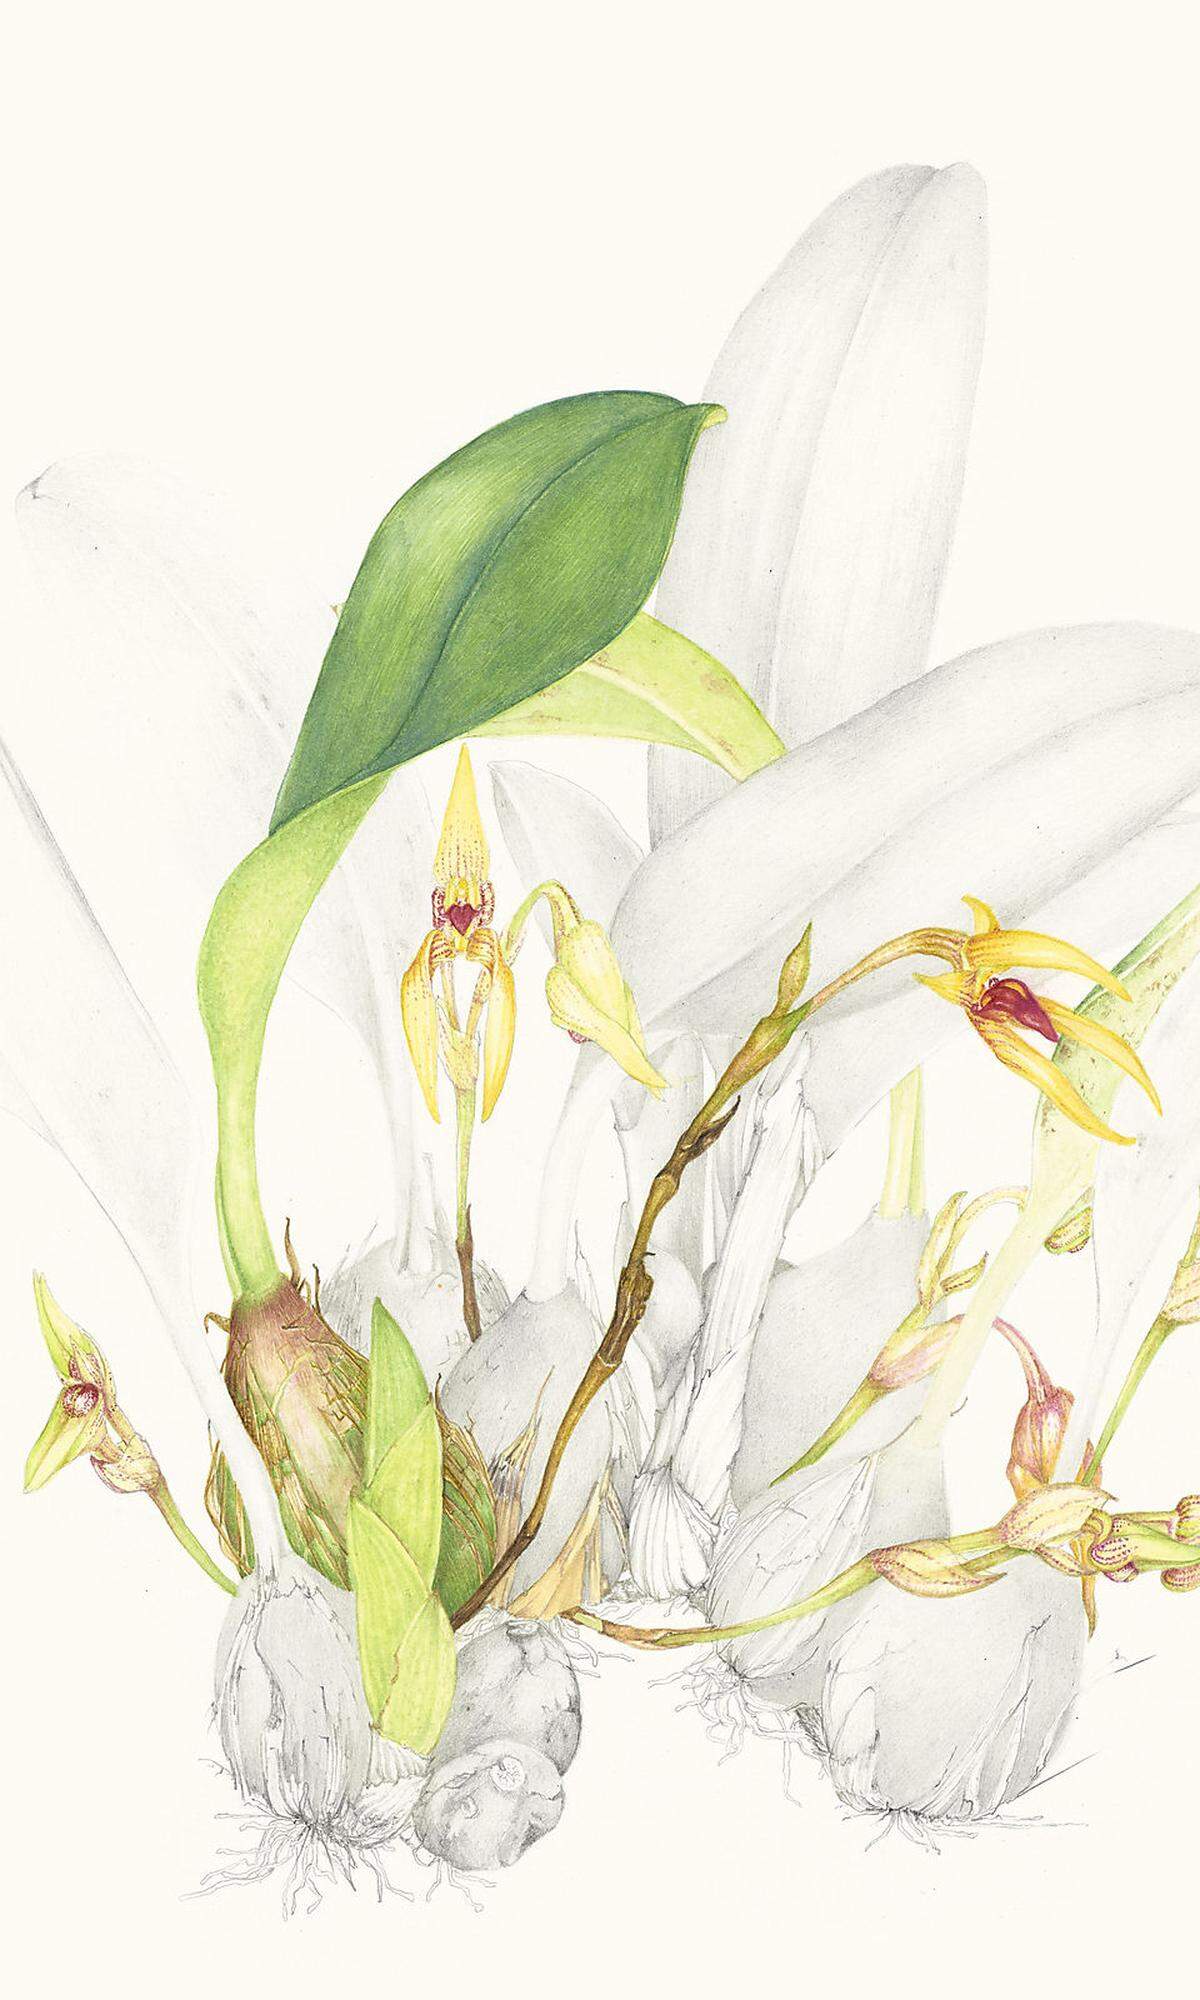 Die Untersuchung von Orchideen der Gattung Bulbophyllum ist ein Schwerpunkt am Botanischen Garten der Uni Wien - er verfügt über eine der weltweit größten Sammlungen.